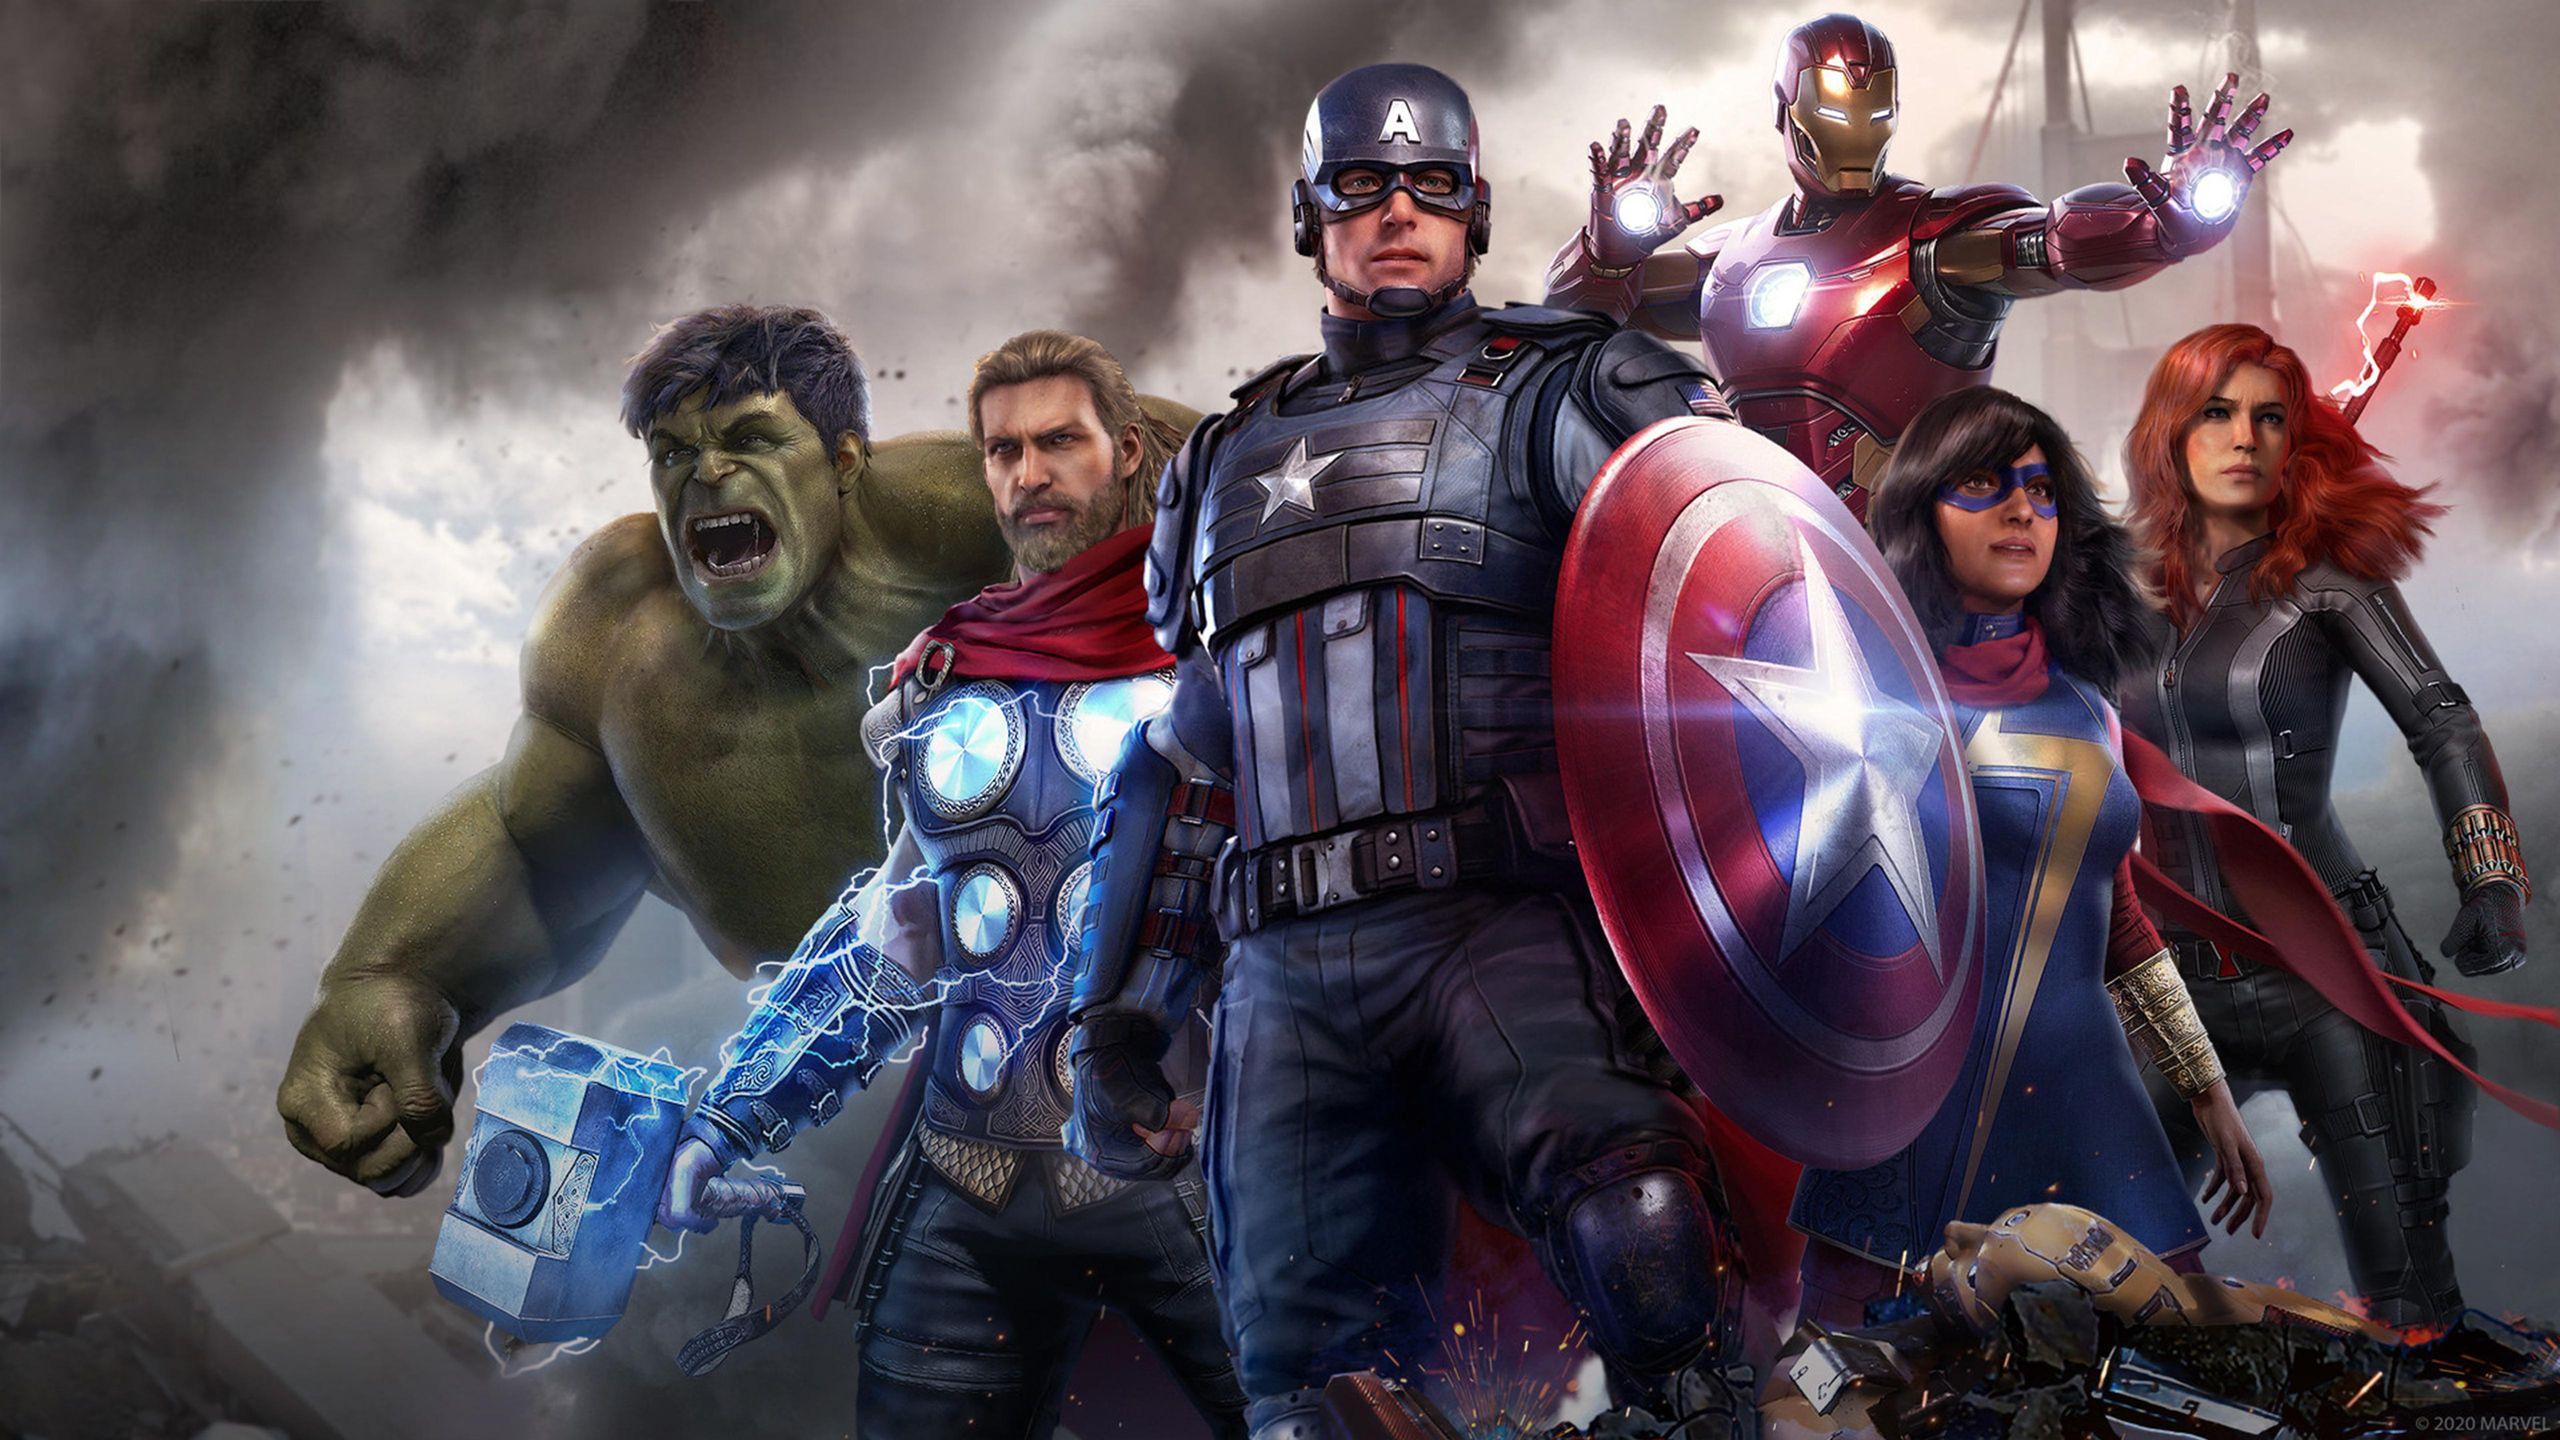 2560 x 1440 · jpeg - Marvel Avengers 4K Wallpapers - Top Free Marvel Avengers 4K Backgrounds ...